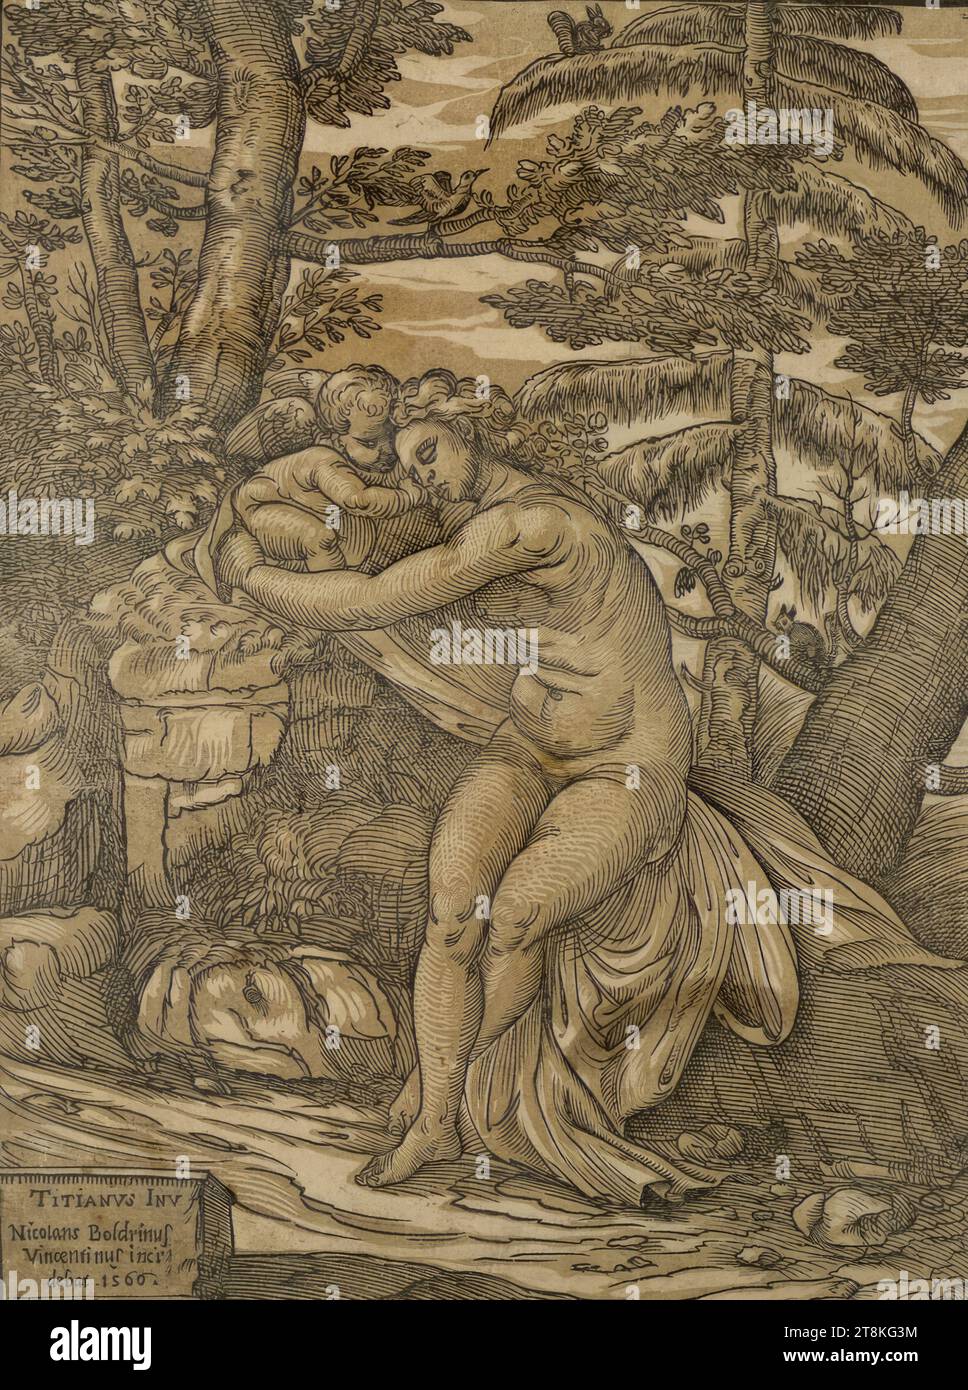 Vénus et Cupidon, Niccolò Boldrini, Italien, adulte 1540/1549, /1566 - 1566, 1566, impression, clair obscur gravure sur bois à partir de deux planches, feuille : 31,2 x 23,4 cm Banque D'Images